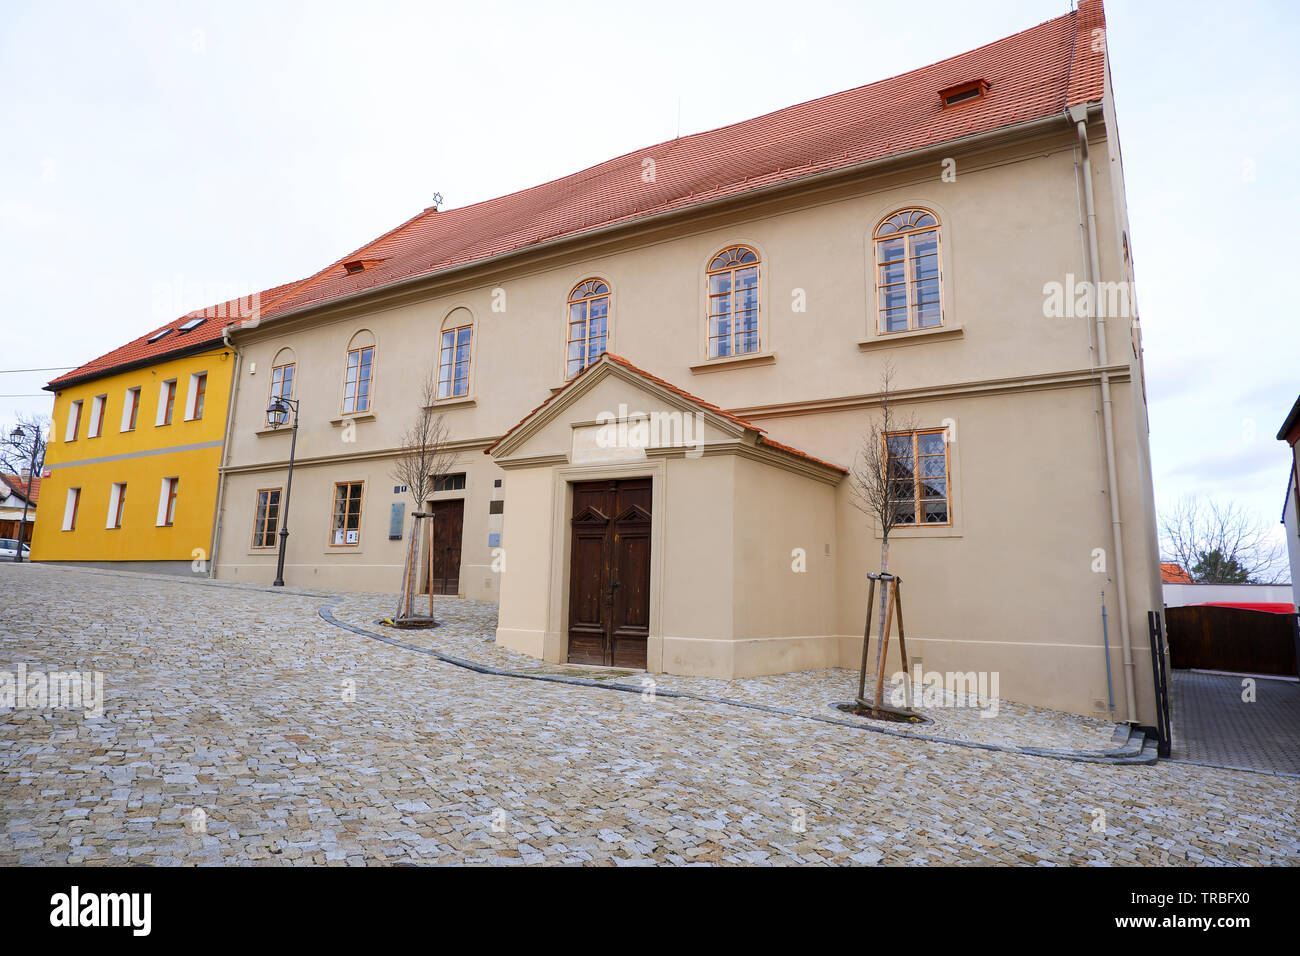 Brandys nad Labem, République tchèque, 31.12.2018, ancien de l'école juive, rue pavée de communauté juive Banque D'Images